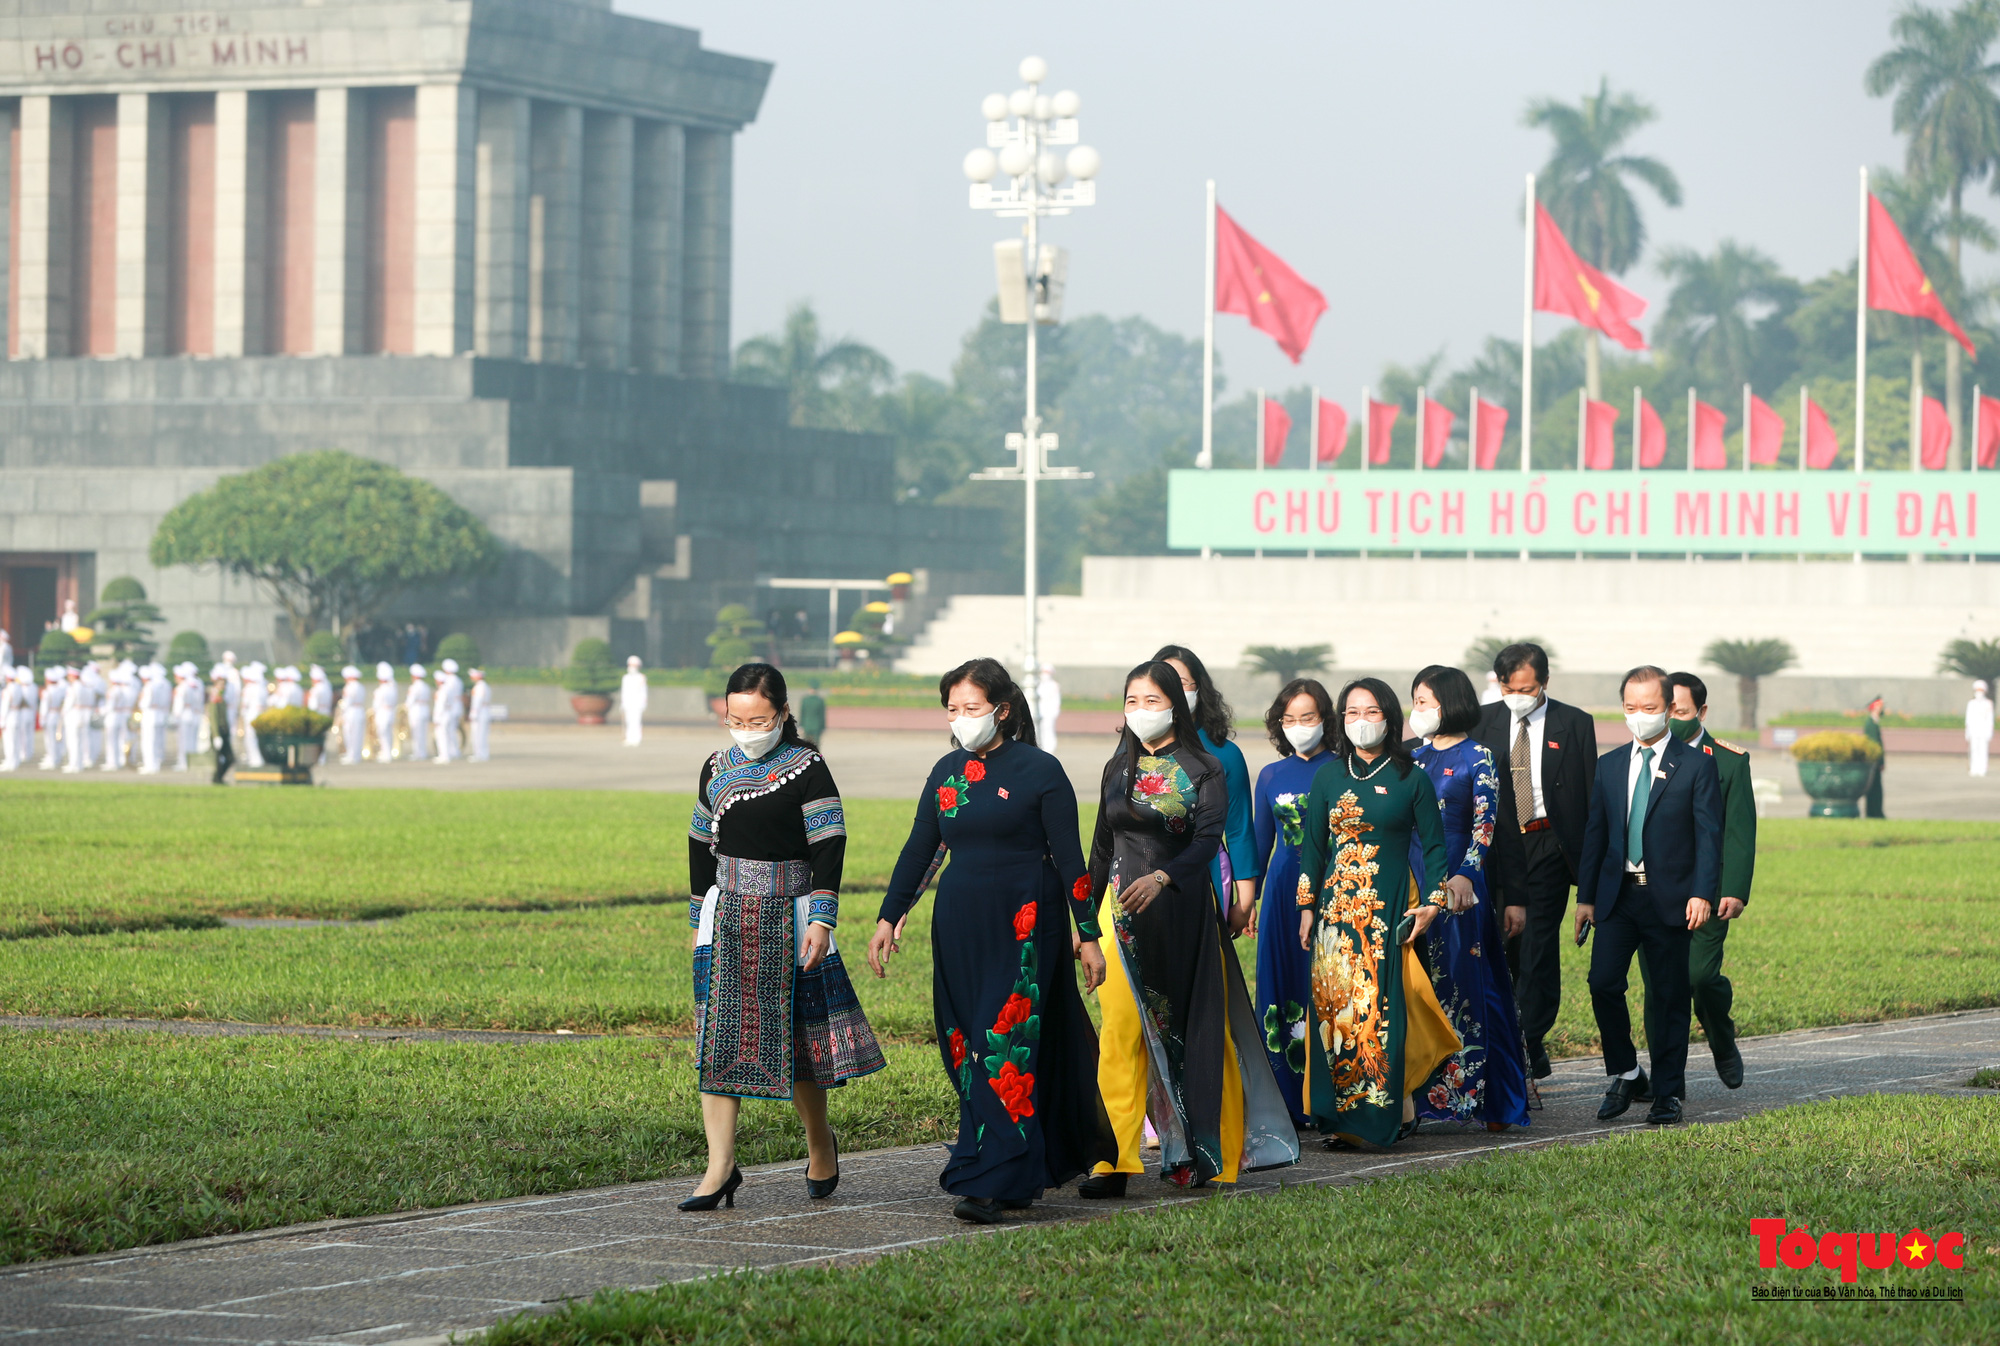 Đại biểu viếng Chủ tịch Hồ Chí Minh trước khai mạc kỳ họp thứ 2 Quốc hội khóa XV - Ảnh 12.